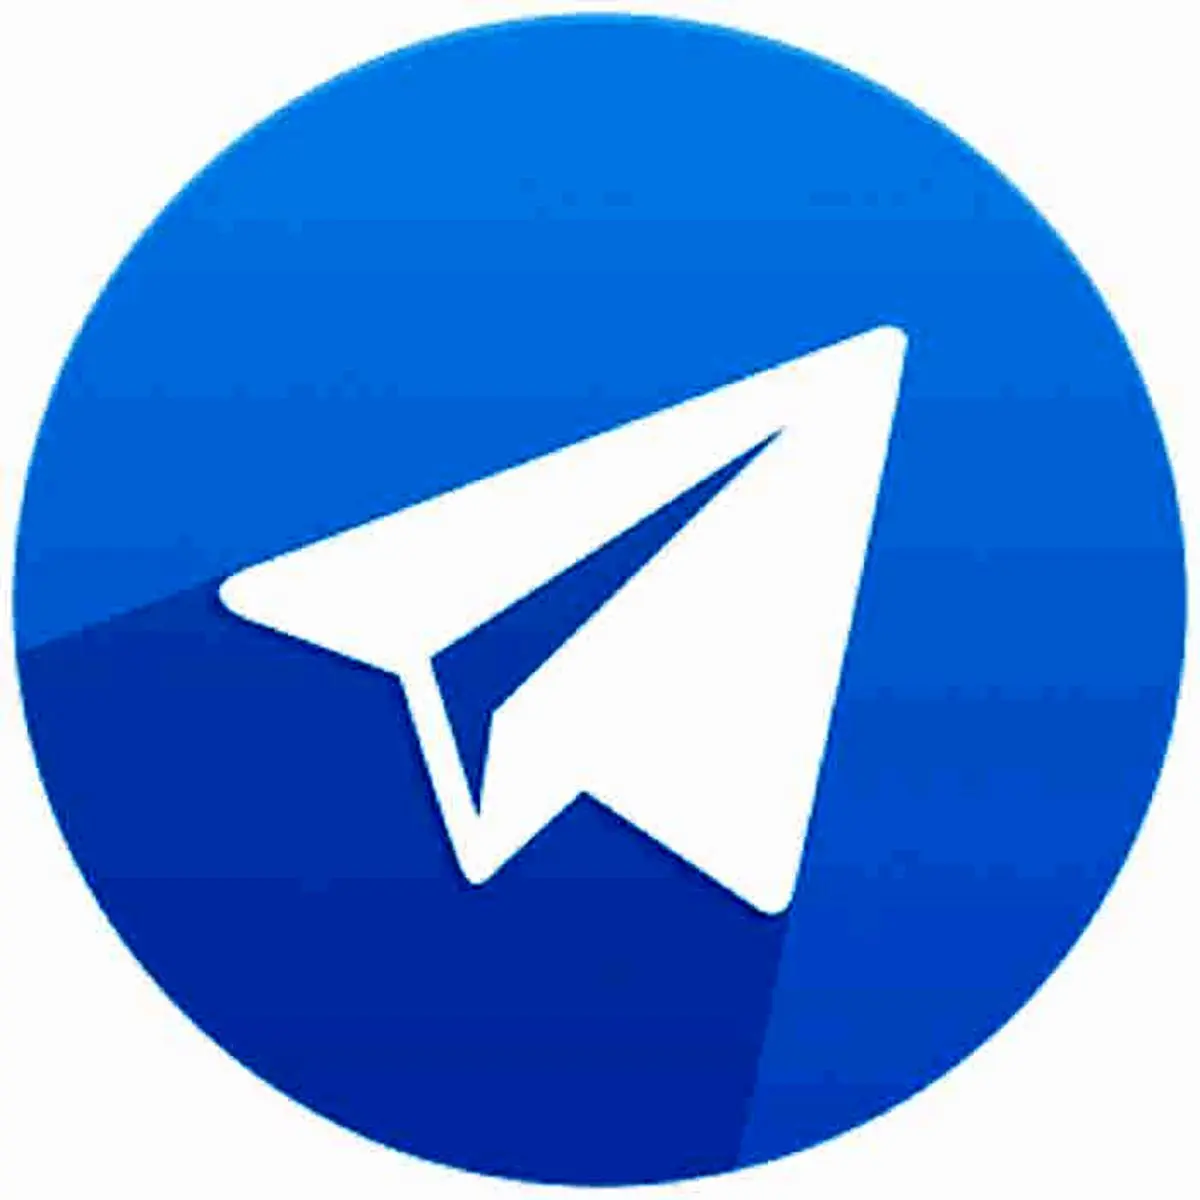 آپدیت جدید تلگرام با قابلیت انتشار استوری در کانال و چند سورپرایز دیگر منتشر شد
